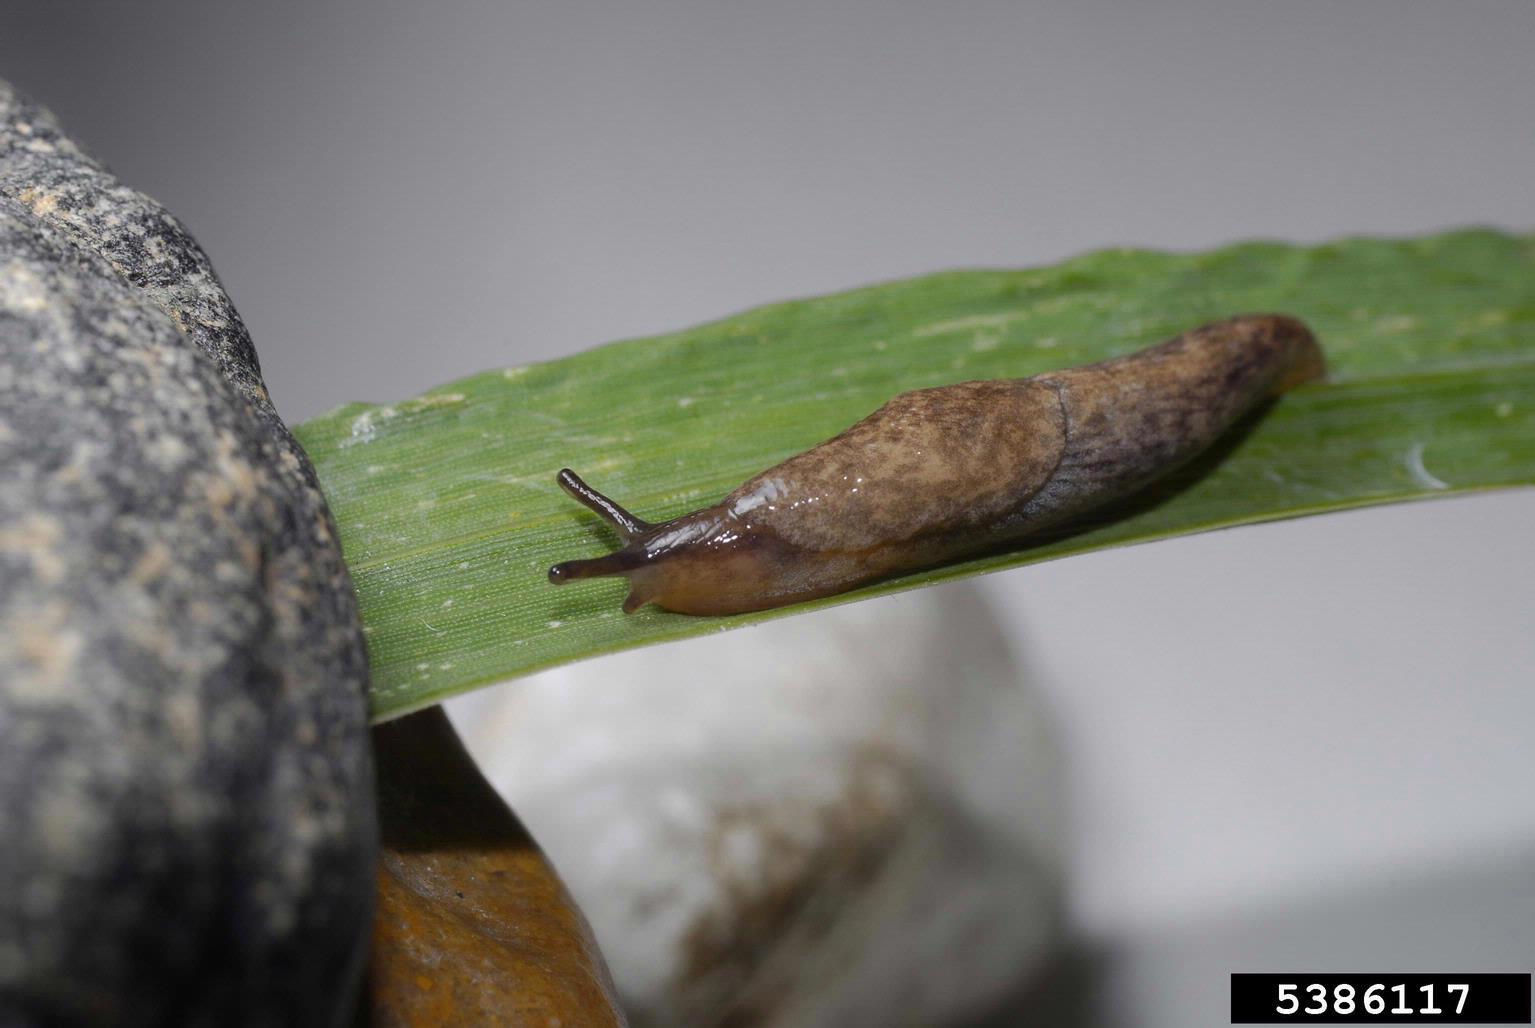 Gray garden slug (Deroceras reticulatum)